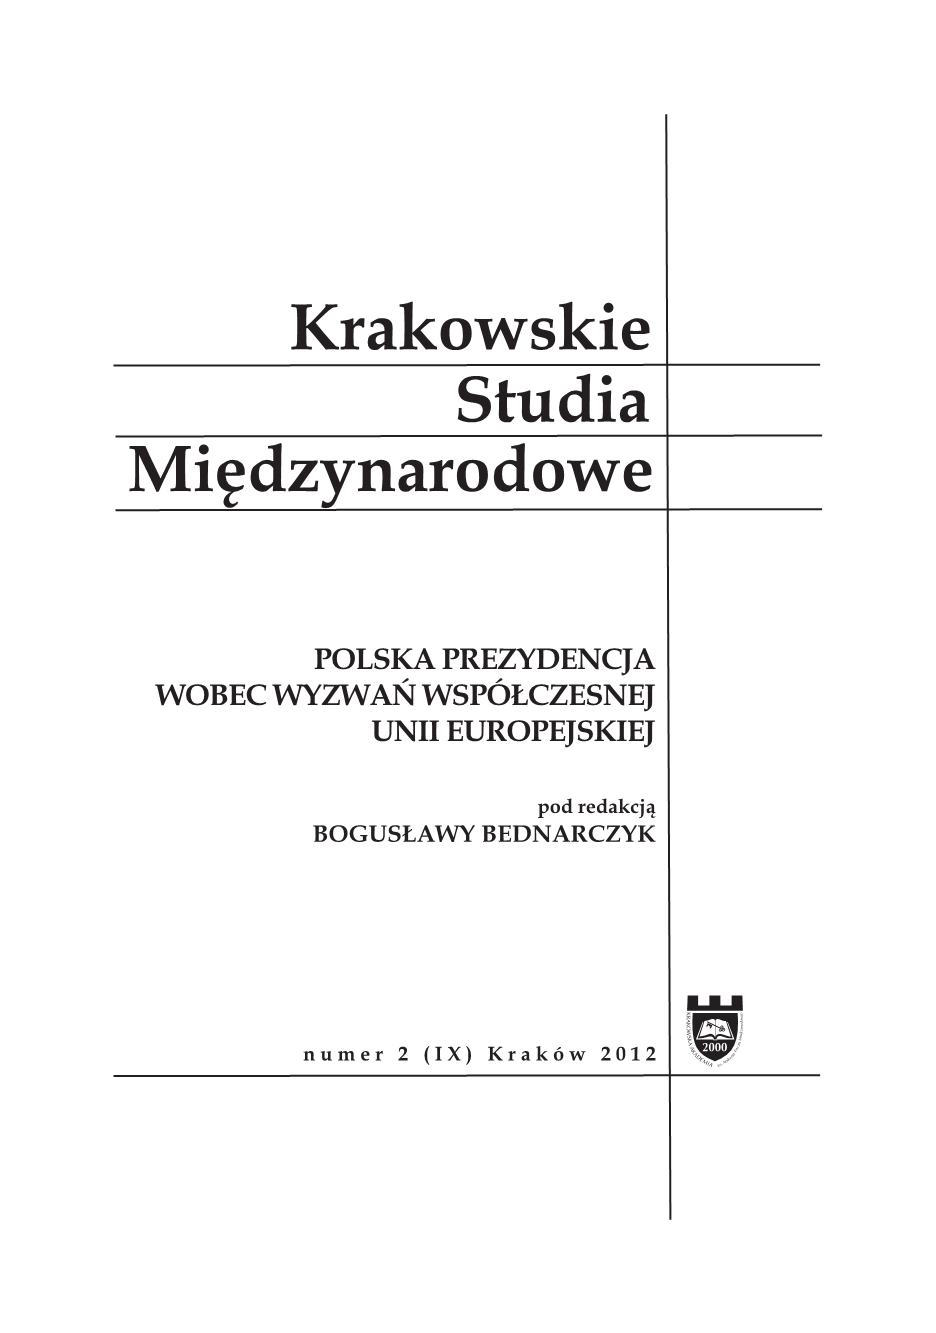 Aspekty polityczno-prawne polskiej prezydencji. Między metodą wspólnotową a międzyrządową